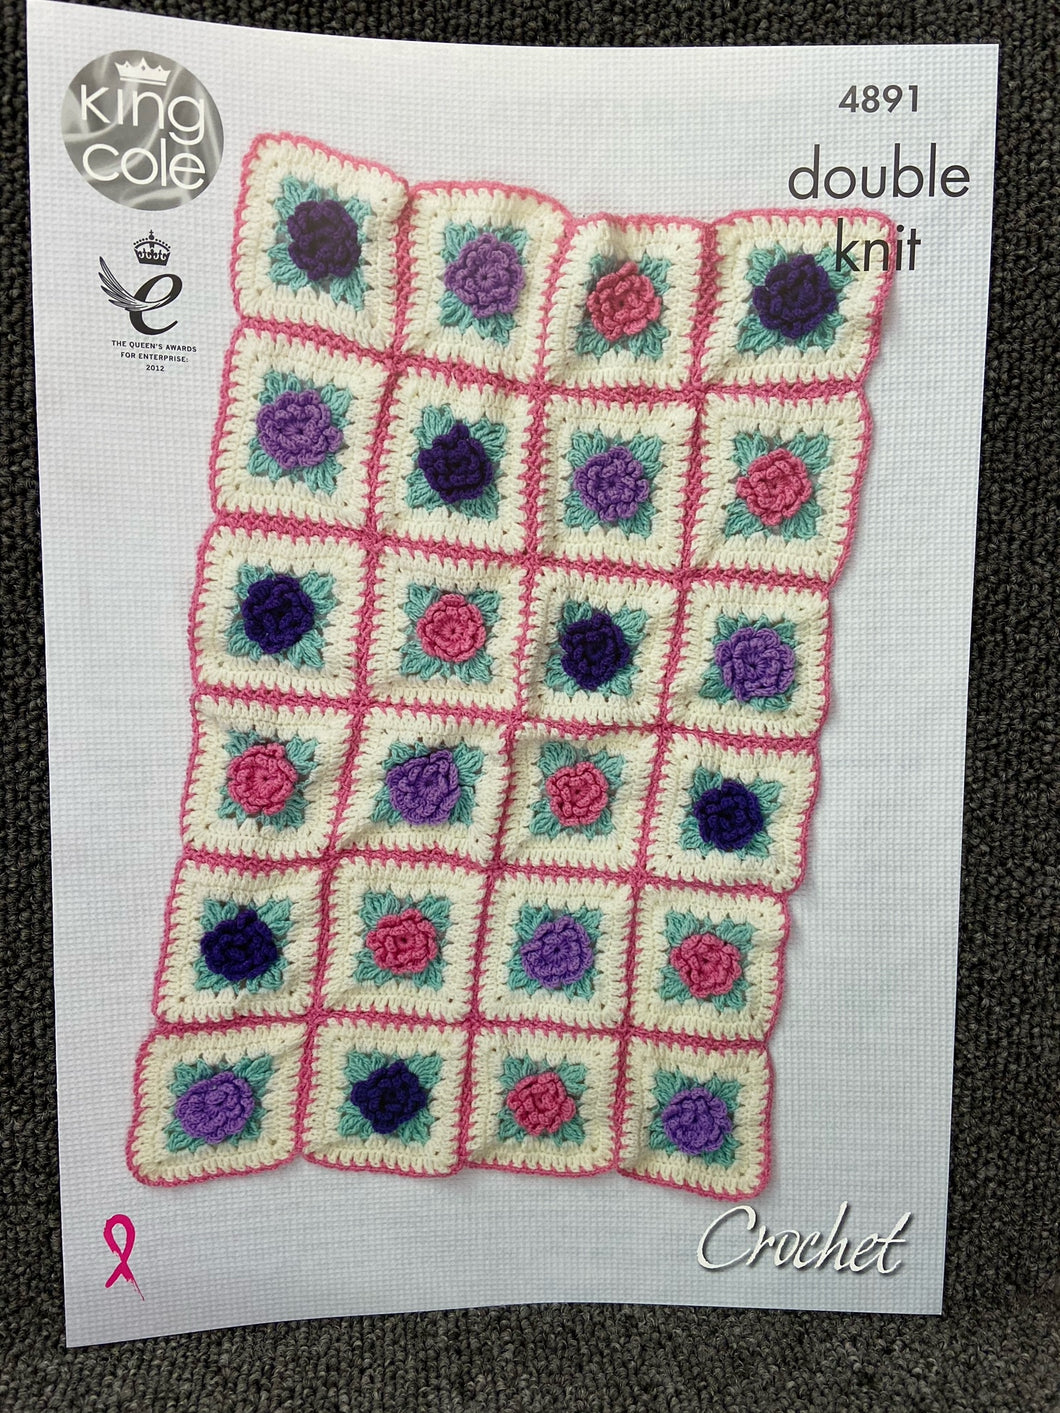 fabric shack knitting crochet knit yarn wool pattern king cole floral motif blanket flowers crochet cherish double knit dk 4891